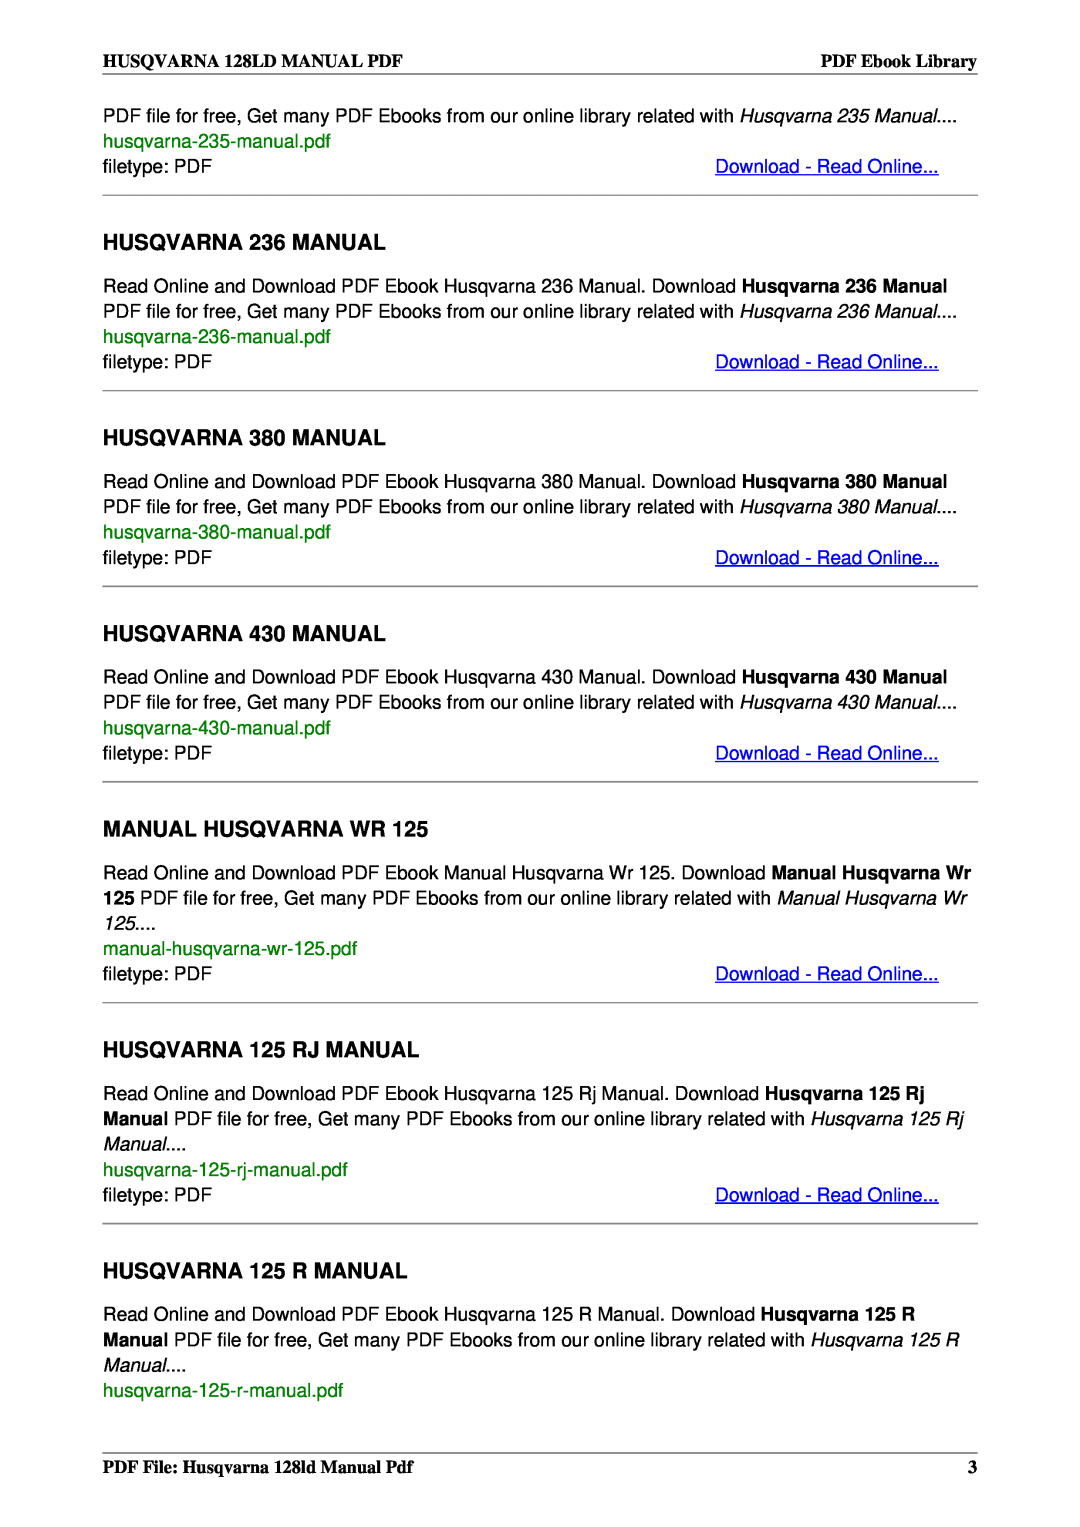 Husqvarna 128LD HUSQVARNA 236 MANUAL, HUSQVARNA 380 MANUAL, HUSQVARNA 430 MANUAL, Manual Husqvarna Wr, filetype: PDF 